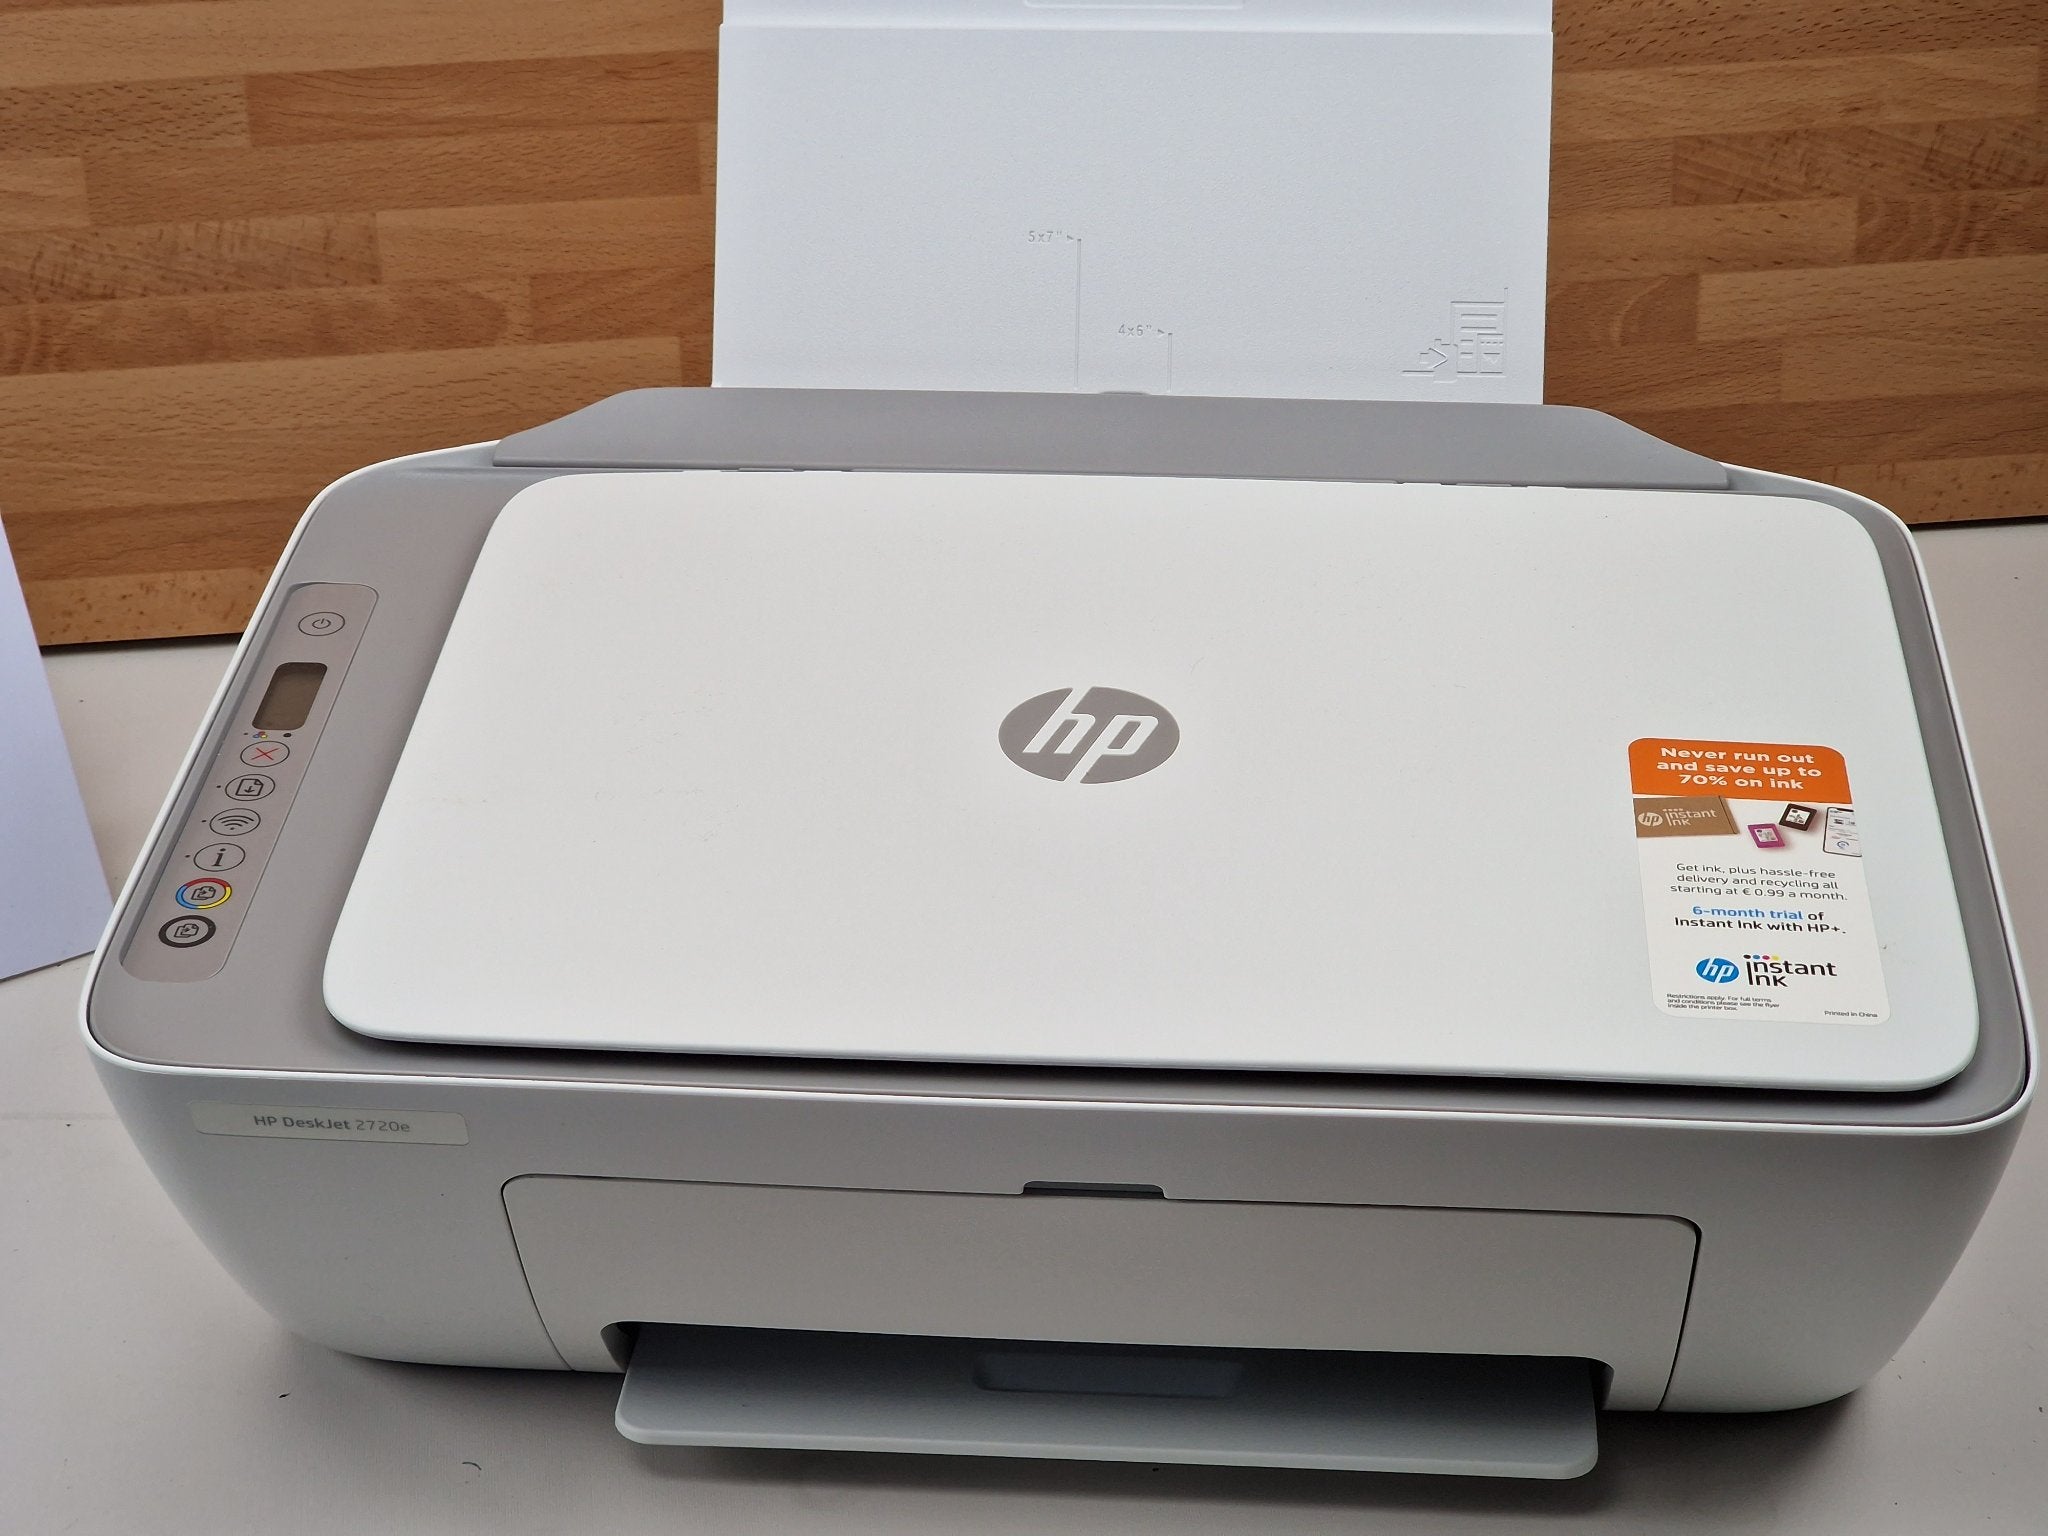 Multifunción HP Deskjet 2720e WiFi Fax Blanca